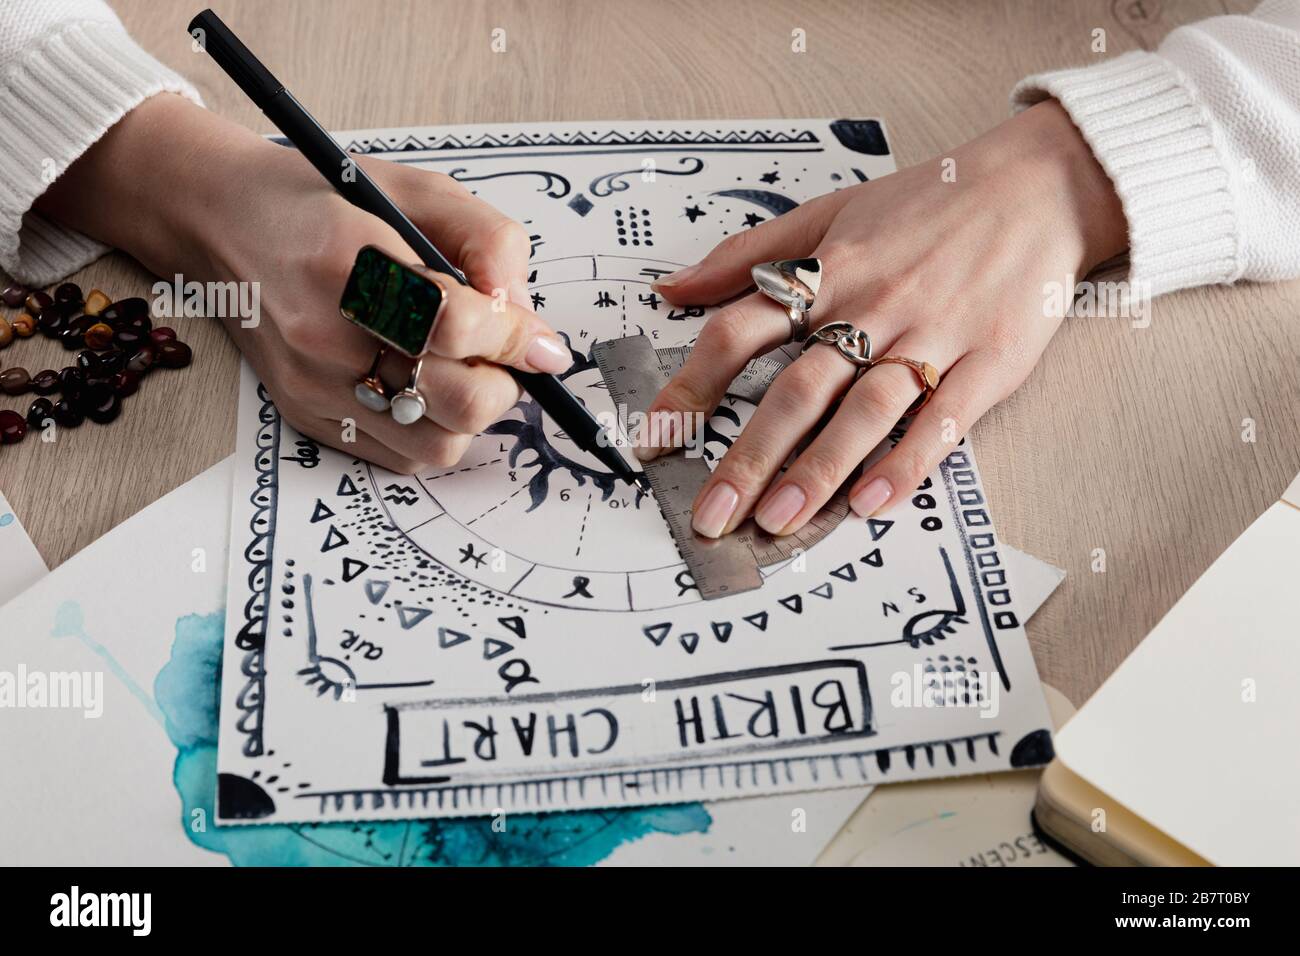 Vue rognée du plan de naissance de l'astrologue avec dessin aquarelle sur la table Banque D'Images